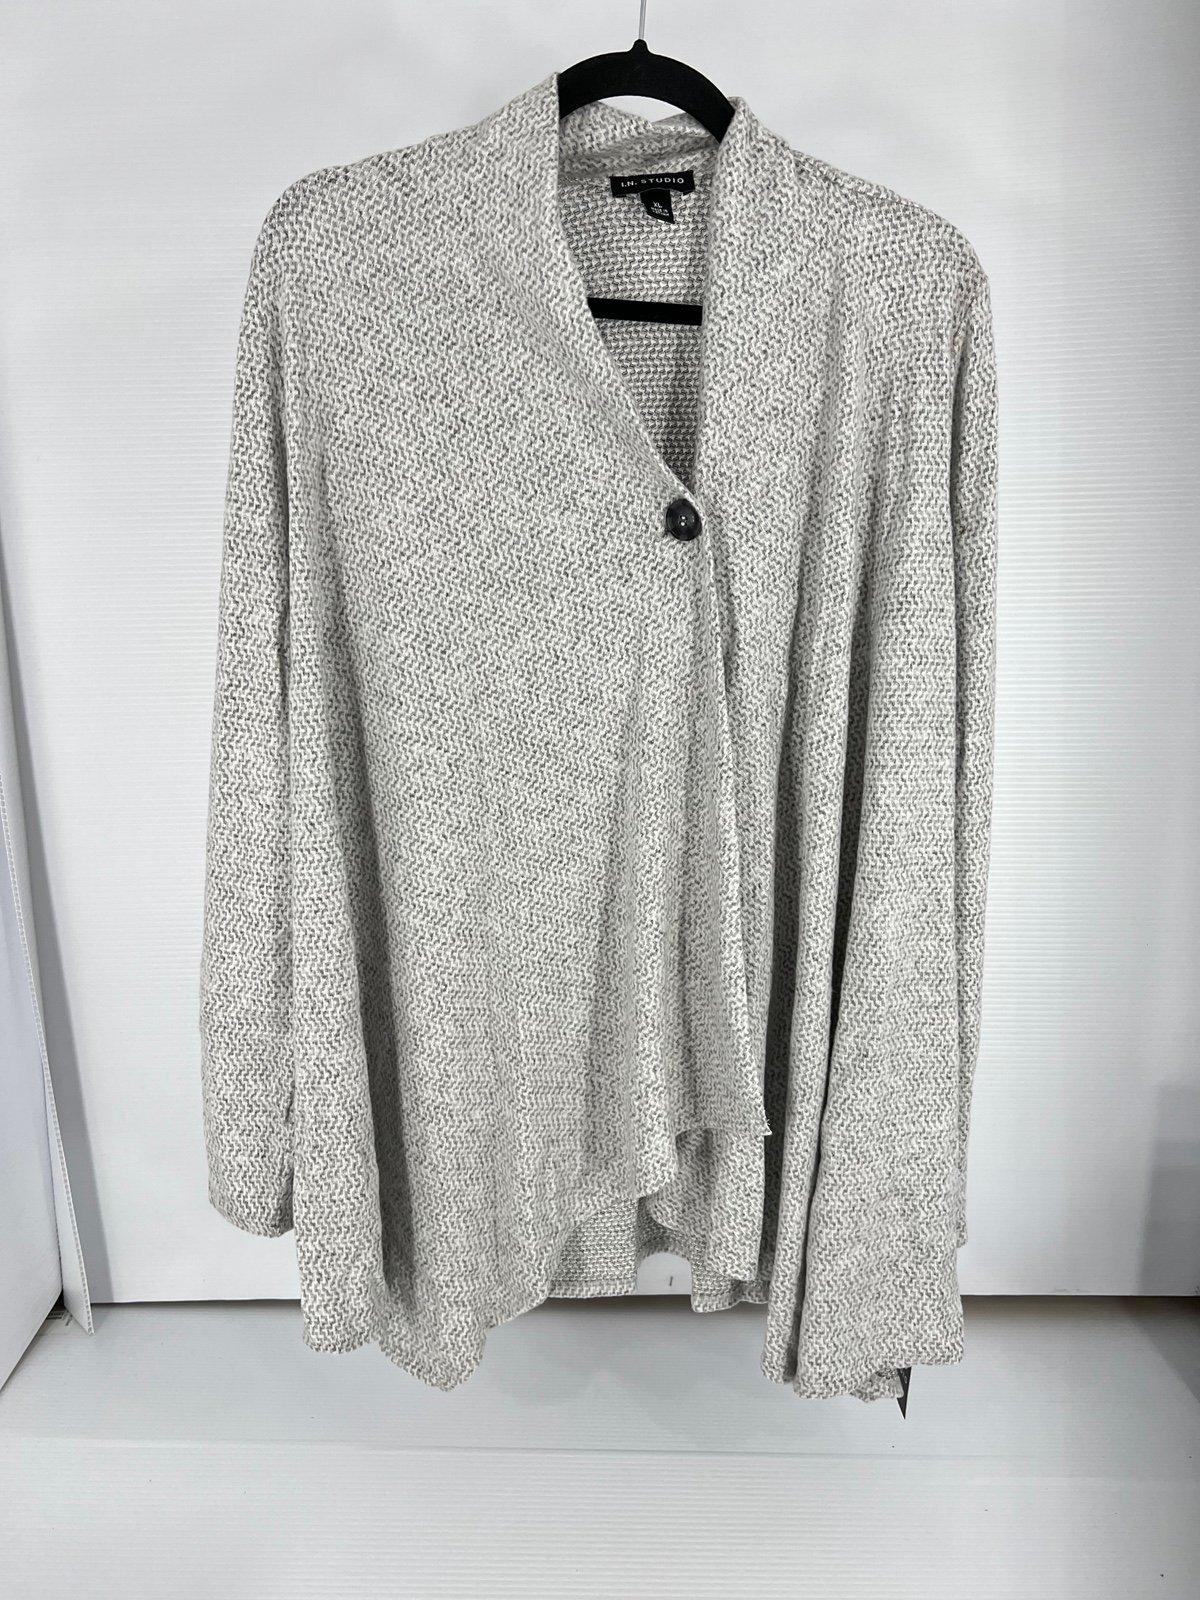 Discounted Women’s XL I.N. Studio Sweater ogOkUfaPJ Zer